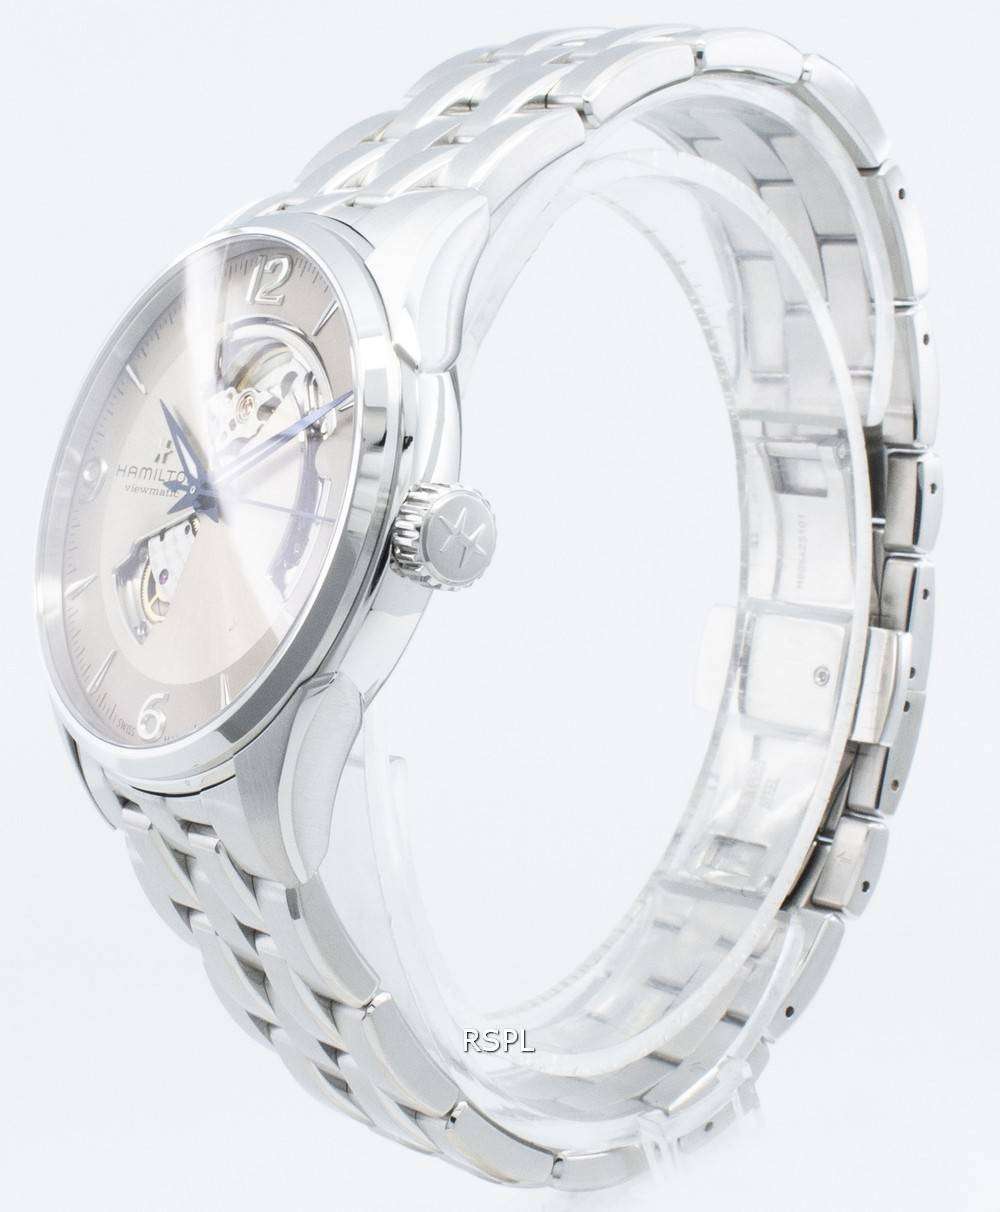 ハミルトンジャズマスターH32705121オープンハート自動メンズ腕時計 Japan